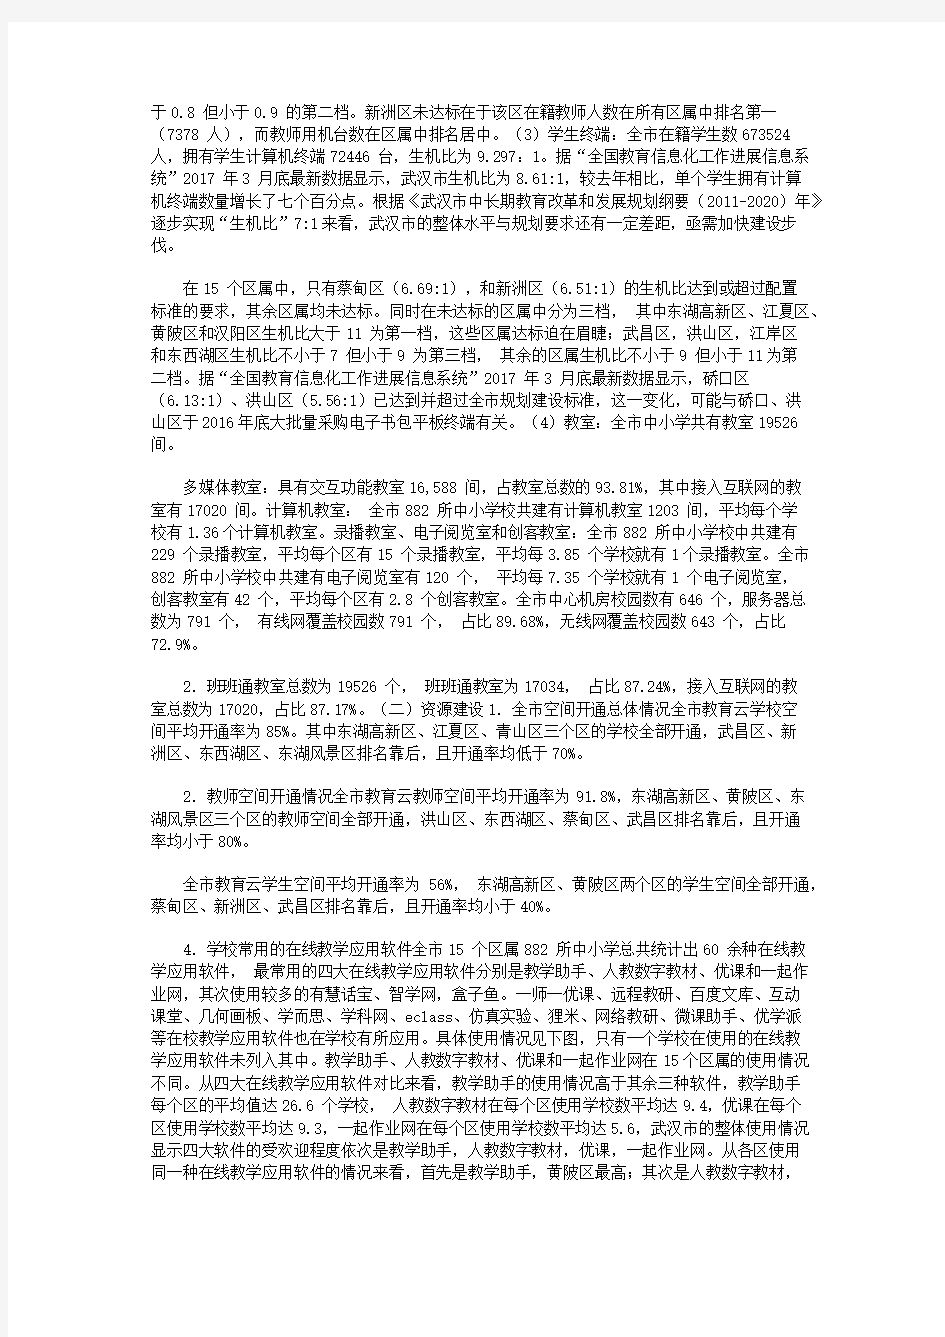 武汉市中小学校教育信息化发展现状调查